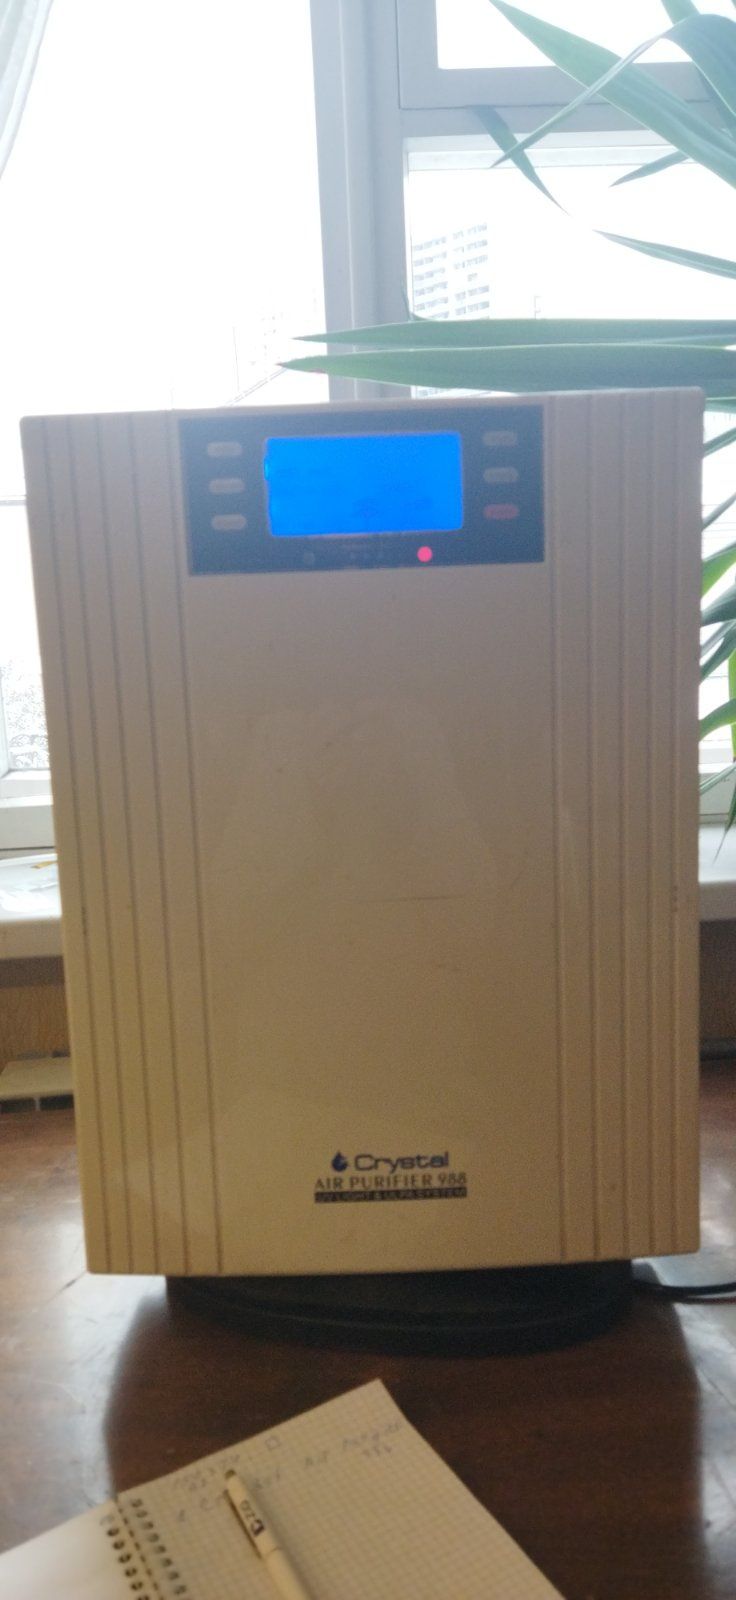 Очиститель воздуха Crystal Air Purifier